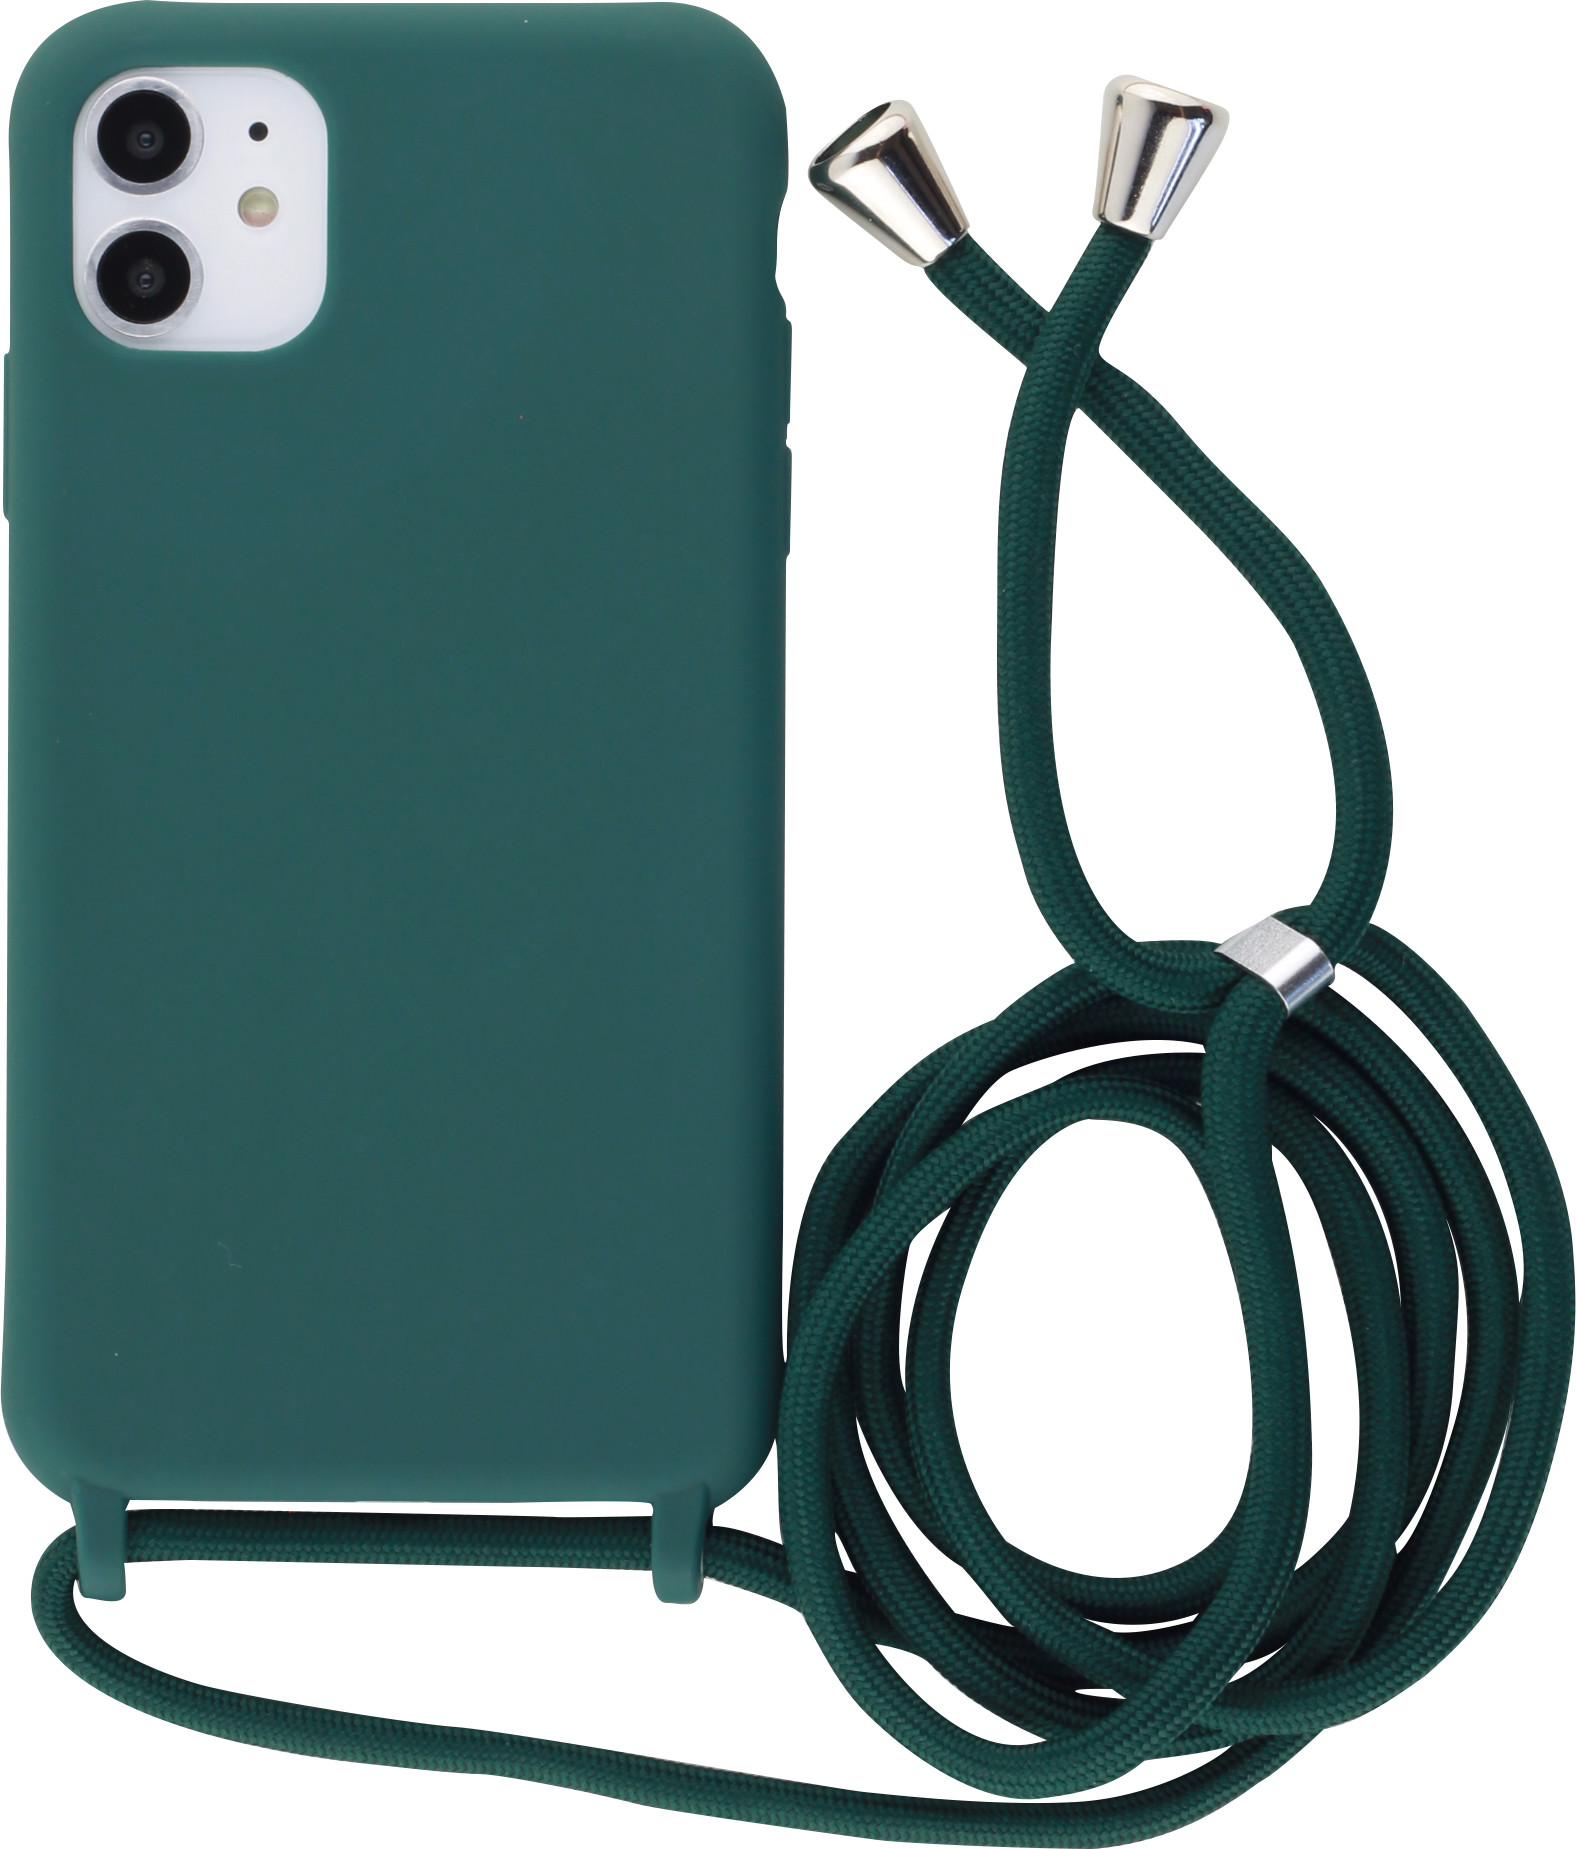 Hülle iPhone 11 - Silikon Matte mit Seil - Dunkelgrün - Kaufen auf ...